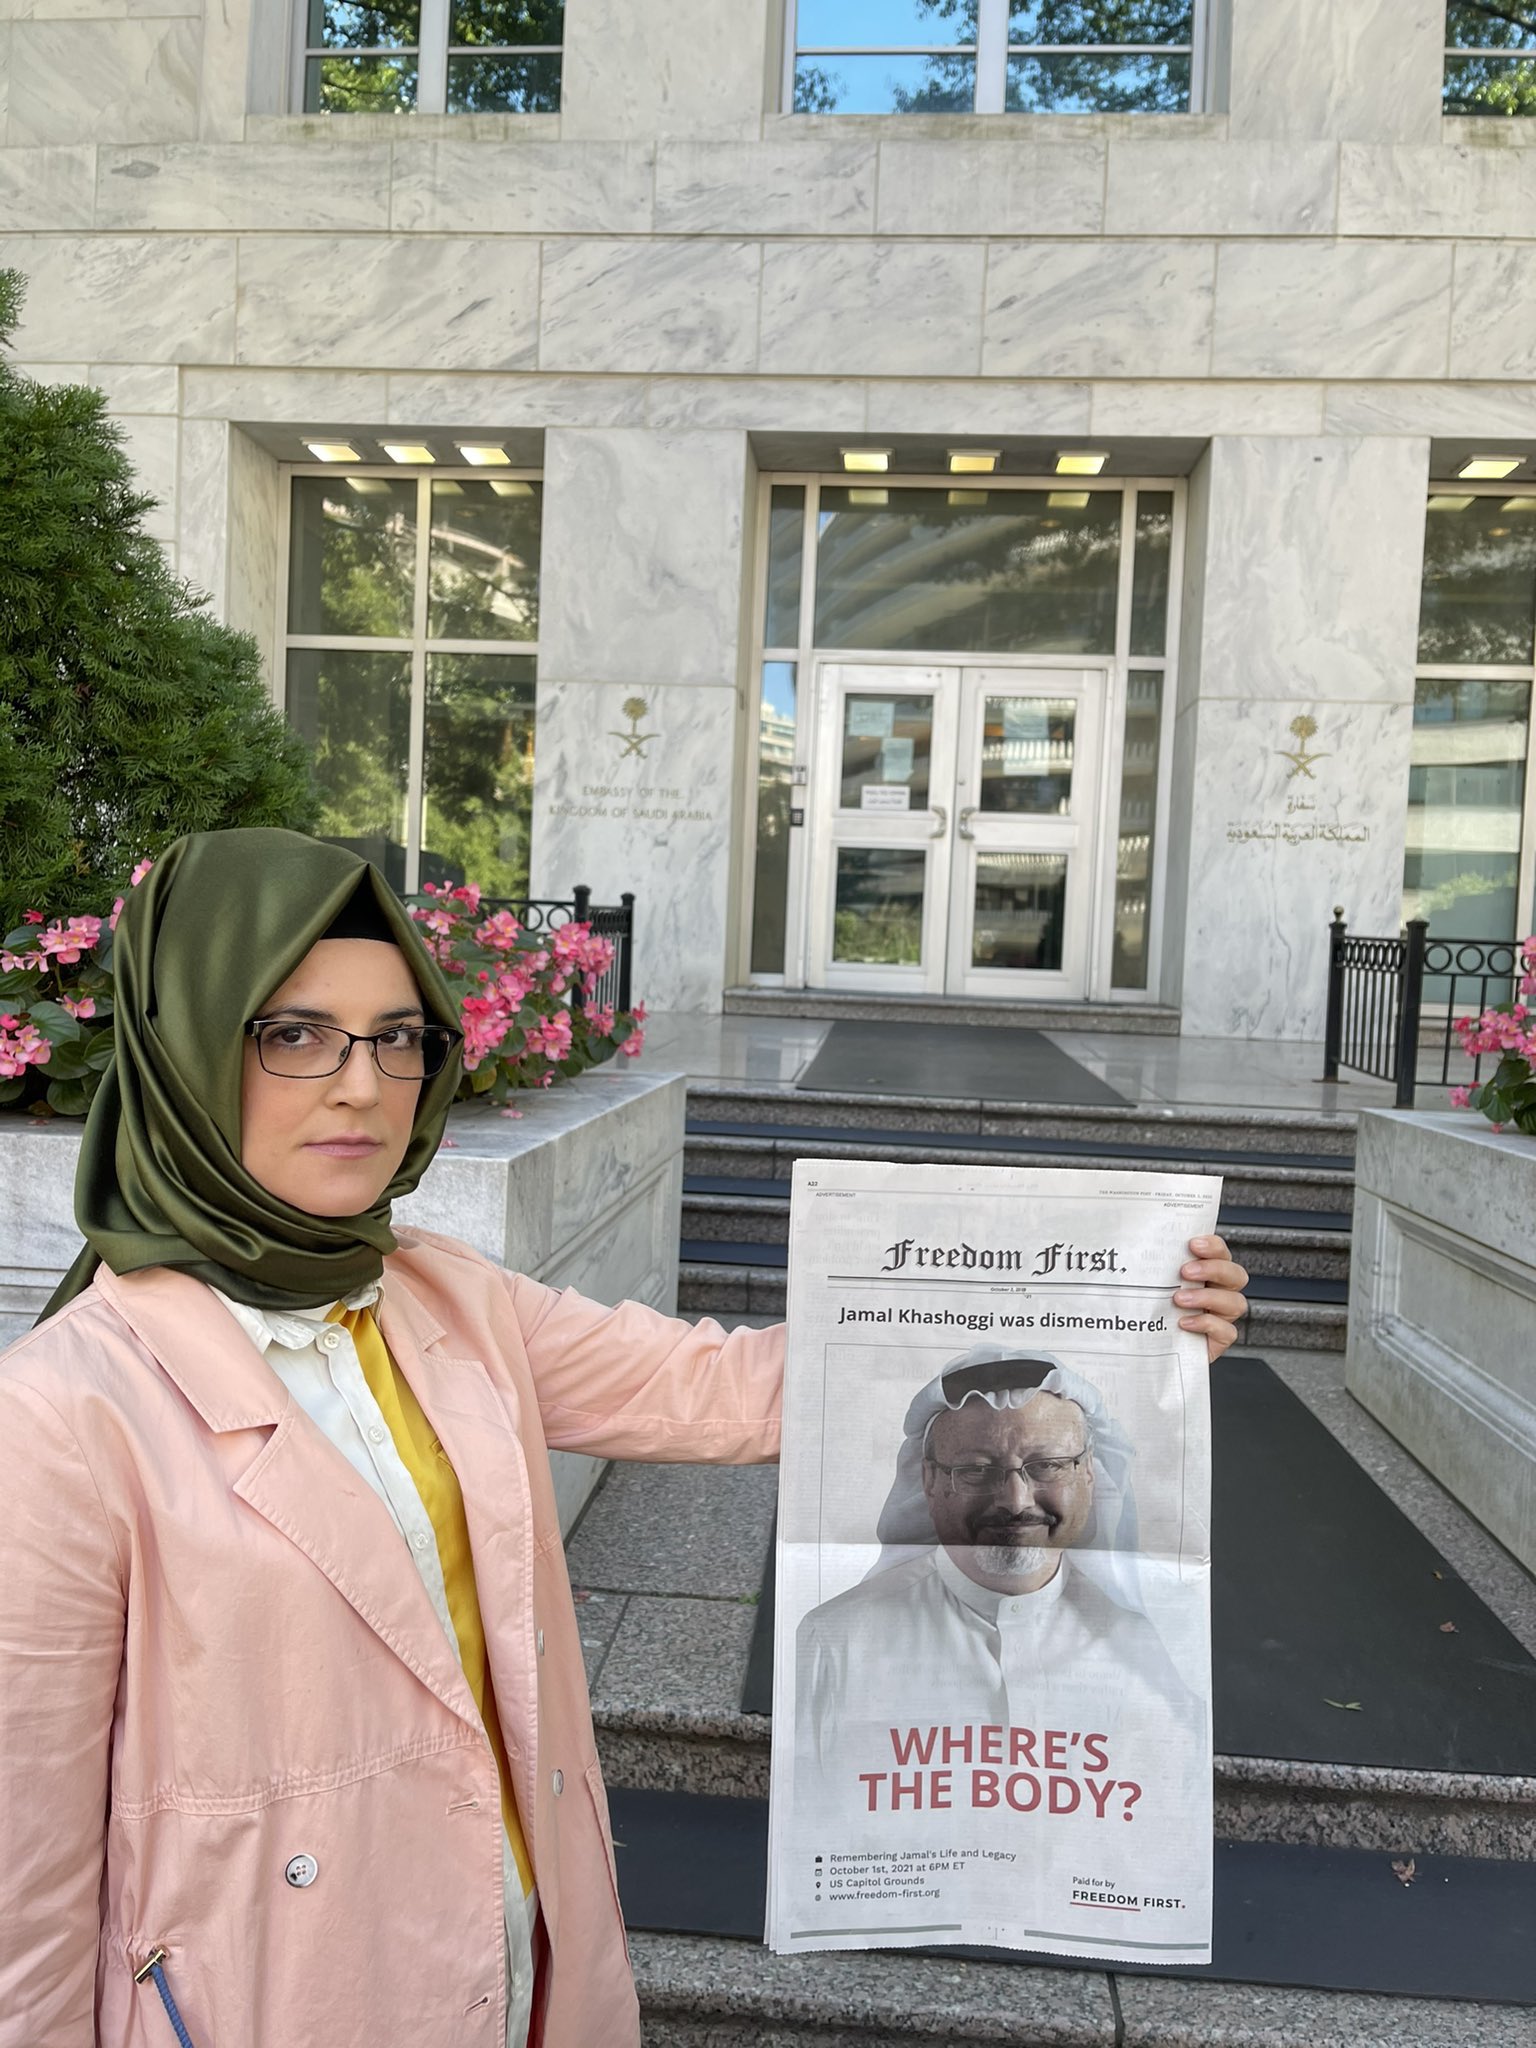 خطيبة جمال خاشقجي، خديجة جنكيز تعرض صحيفة على غلافها صورة خاشقجي وعنوان الصحيفة: أين جثته؟